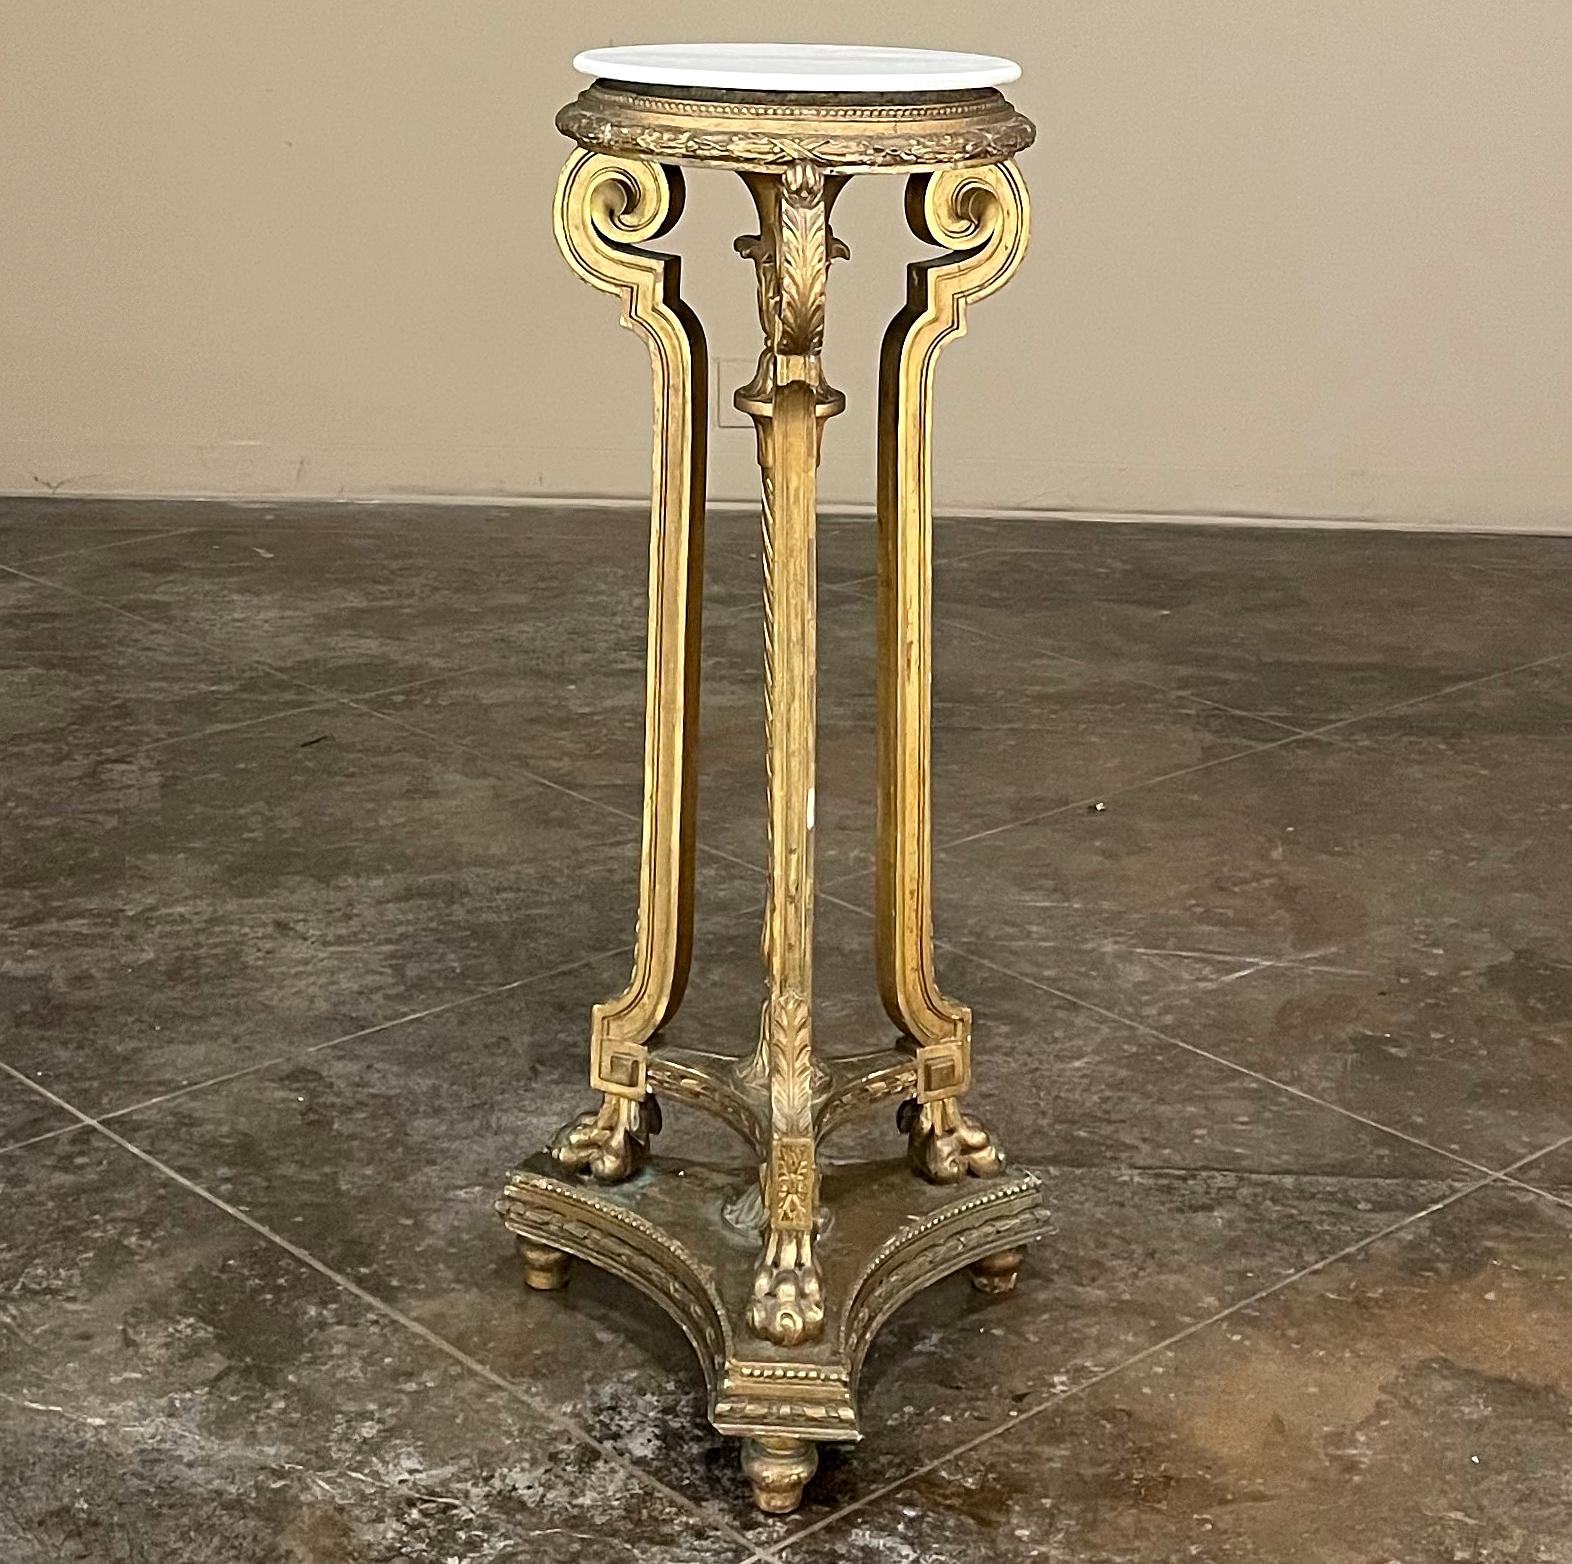 Der französische Louis XVI-Sockel aus Vergoldungsholz des 19. Jahrhunderts mit einer Platte aus Carrara-Marmor ist das perfekte Ausstellungsstück, um Ihre Statuen, Vasen oder Kunstwerke zu präsentieren! Das Design im neoklassischen Stil wird von